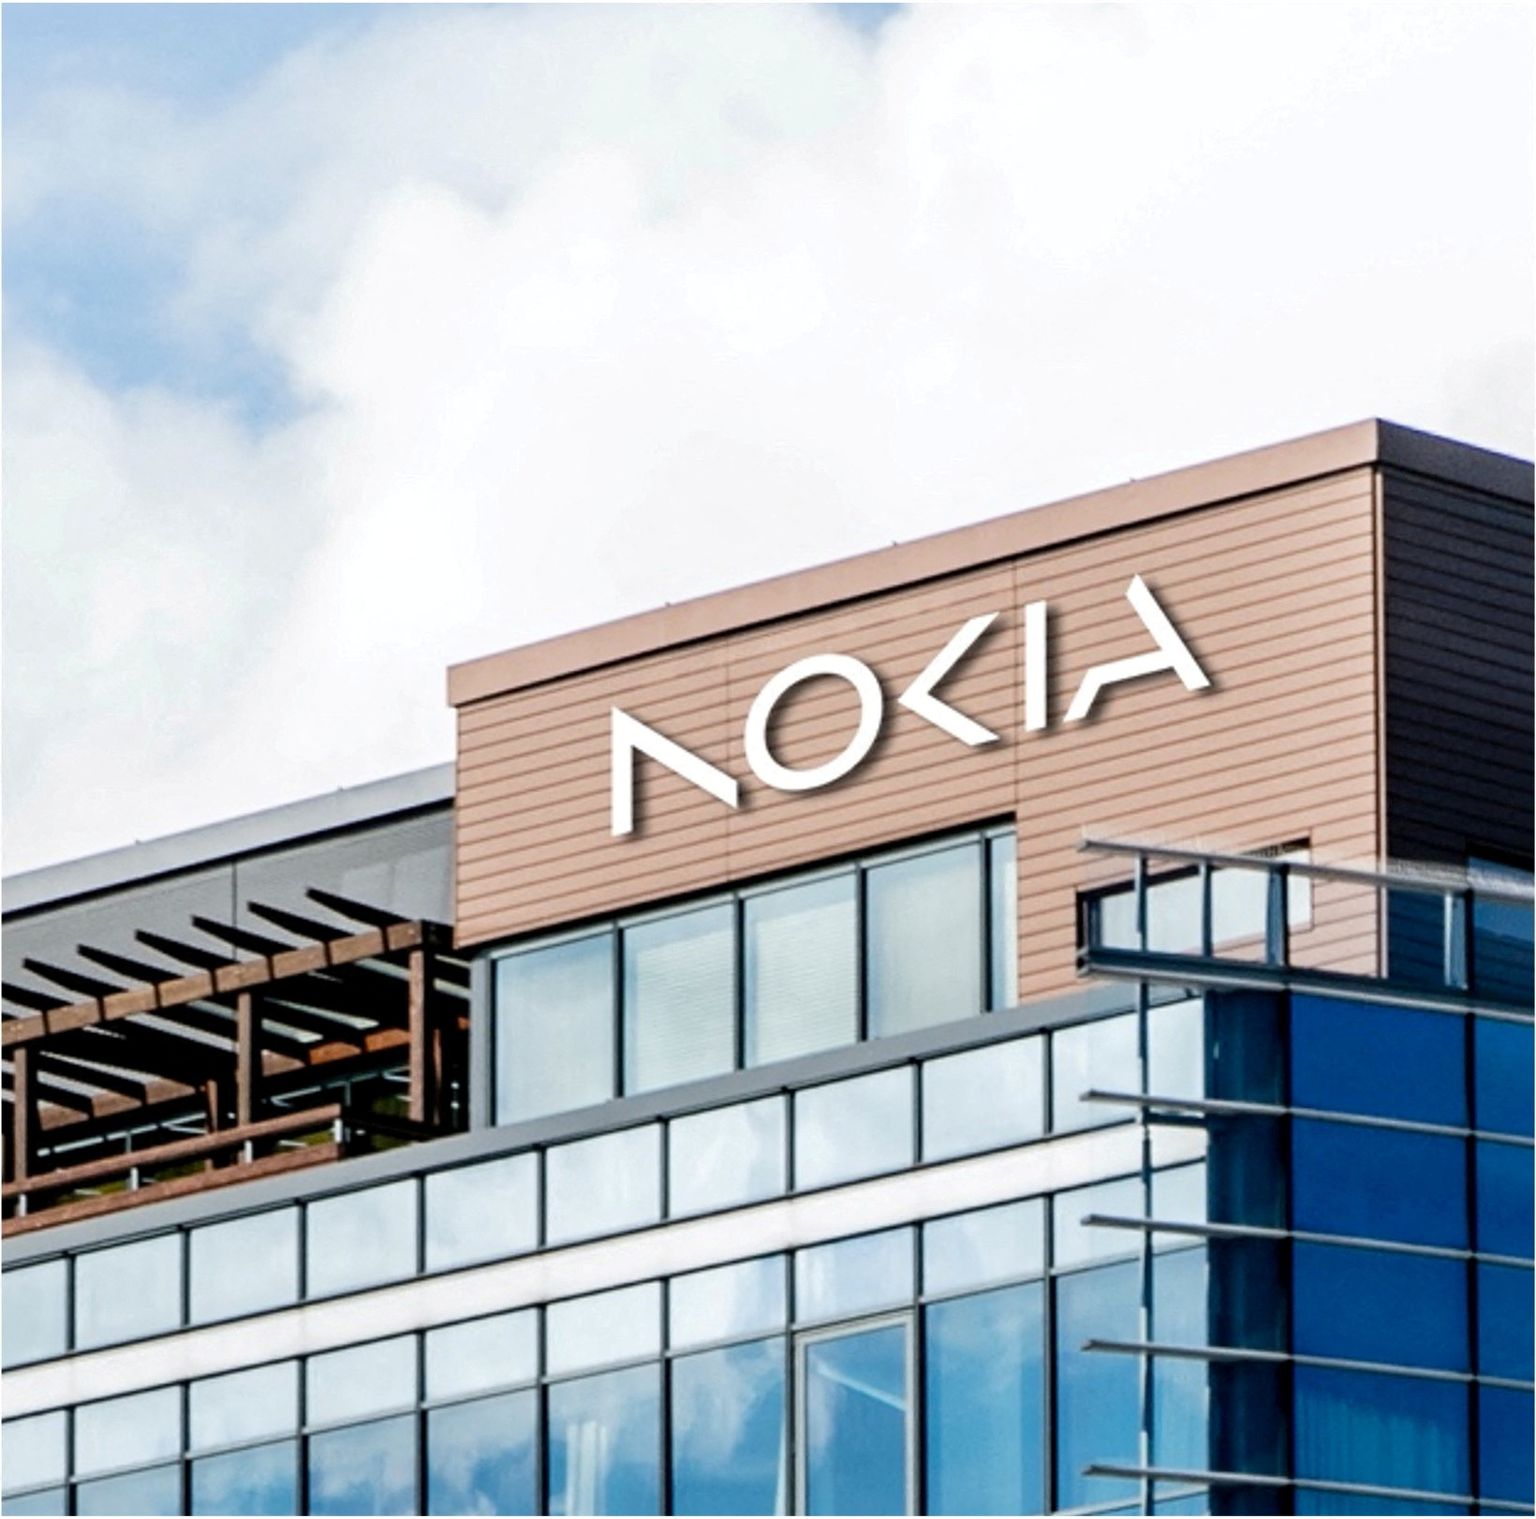 Nokia uus logo ettevõtte Espoo peakontoril.